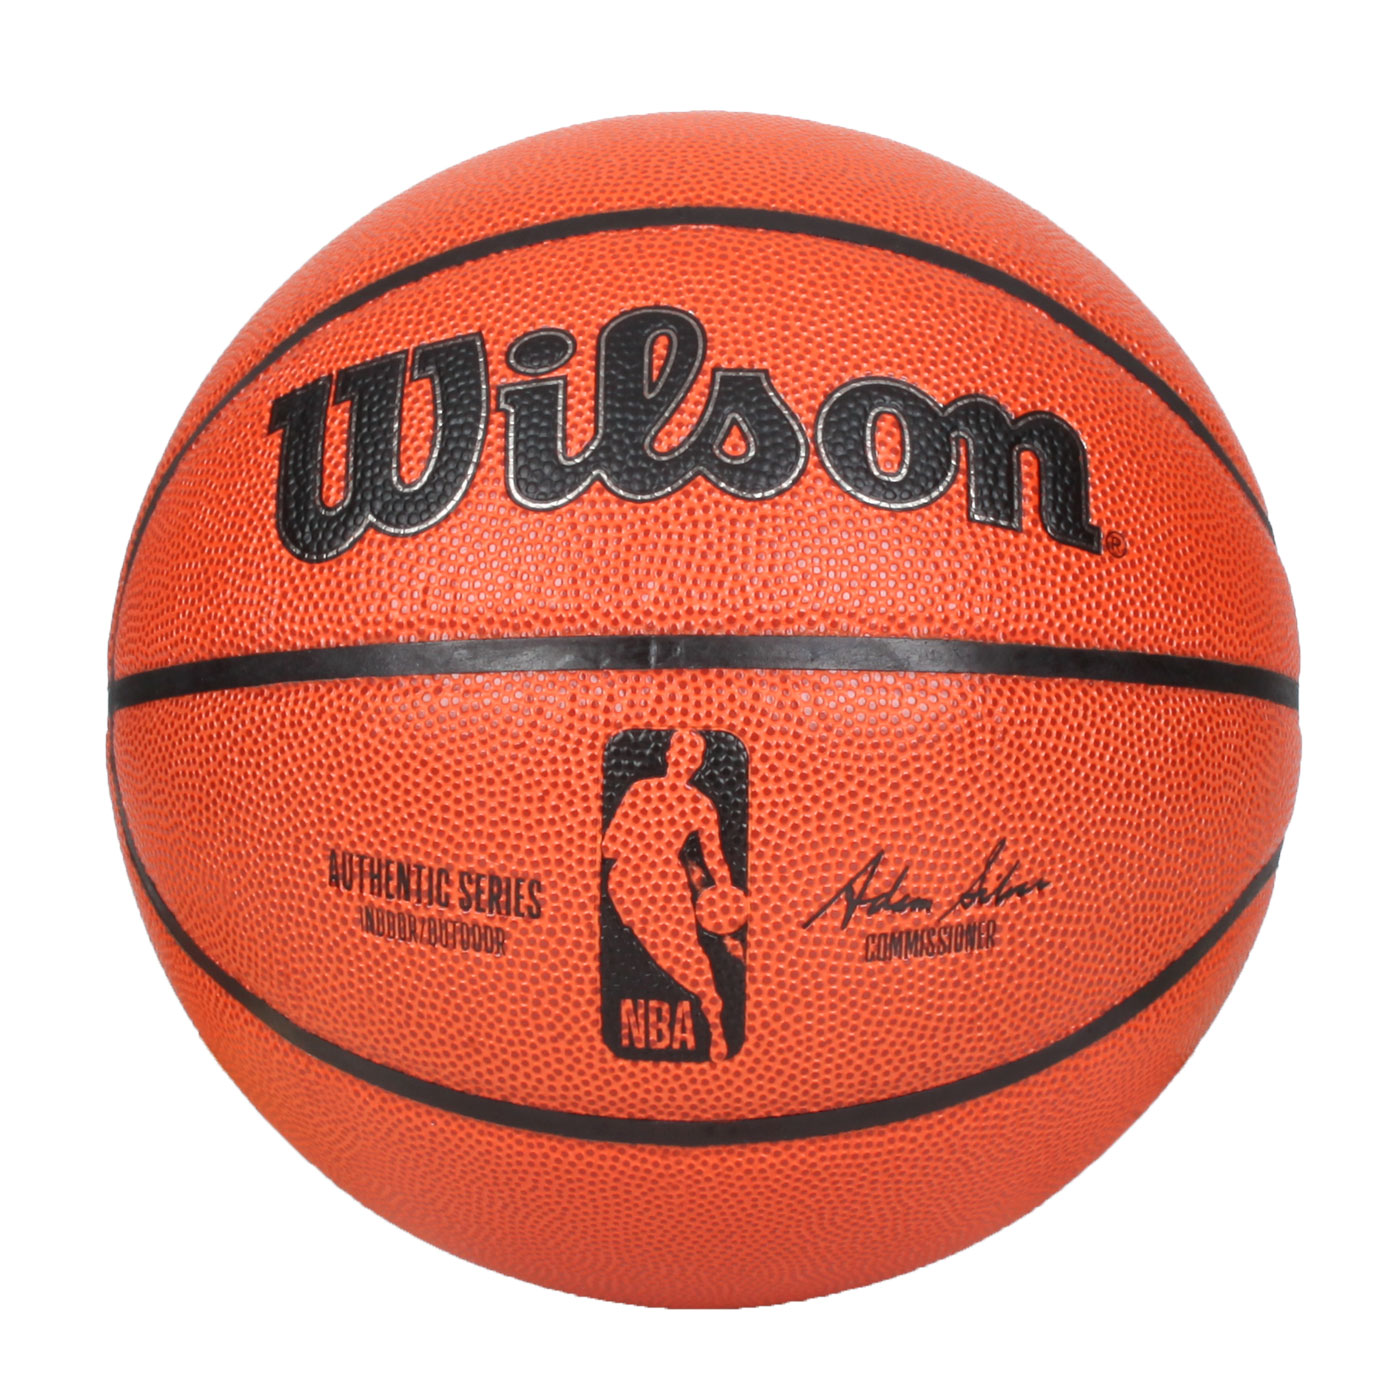 WILSON NBA AUTH系列合成皮籃球#7(訓練室內7號球威爾森「WTB7200XB07